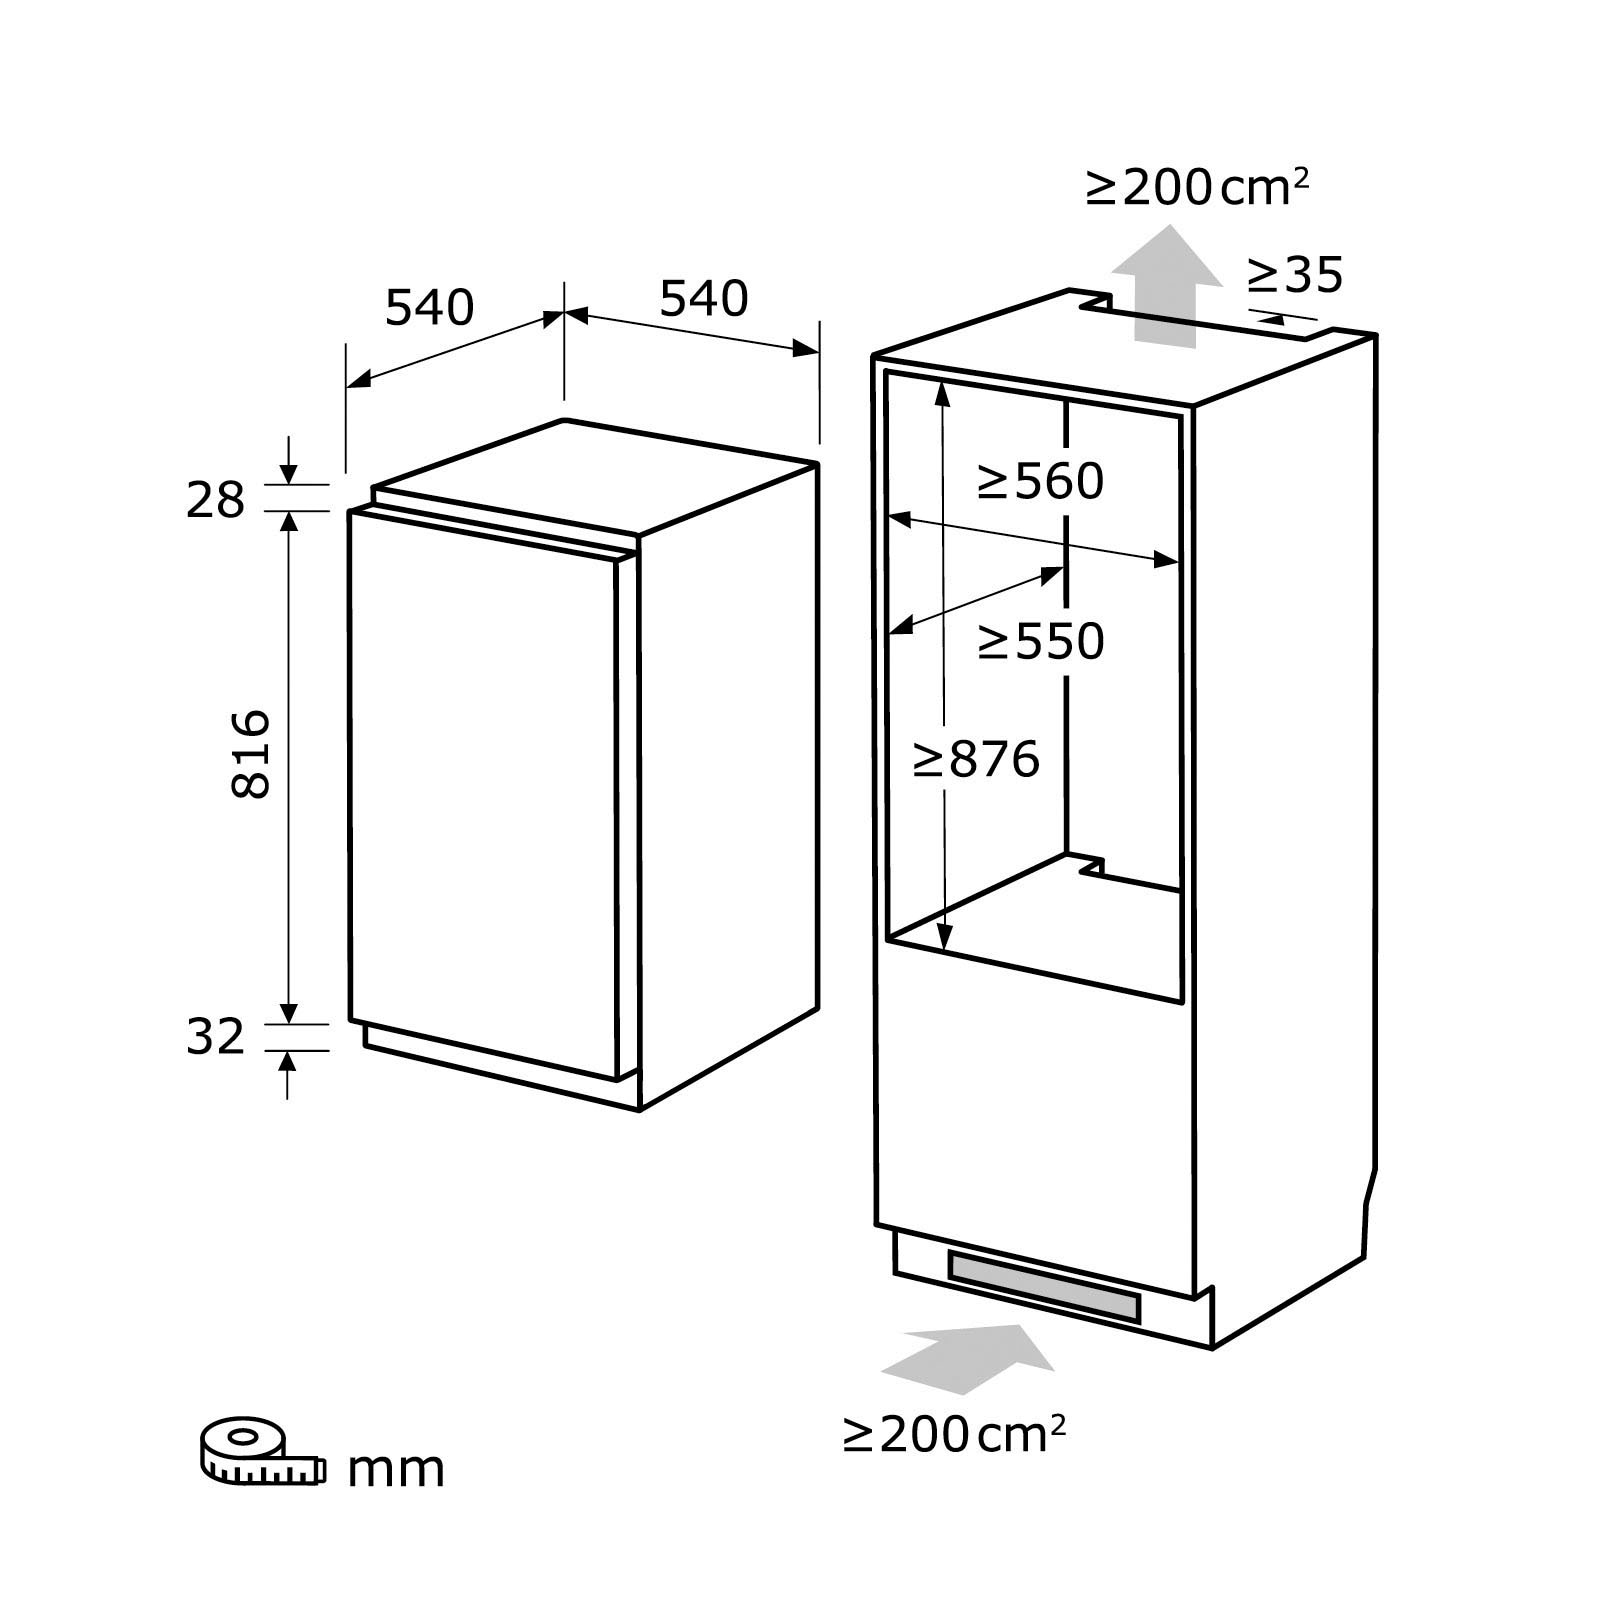 exquisit Einbaukühlschrank »EKS131-4-E-040E«, EKS131-4-E-040E, 88 cm hoch, 54 cm breit